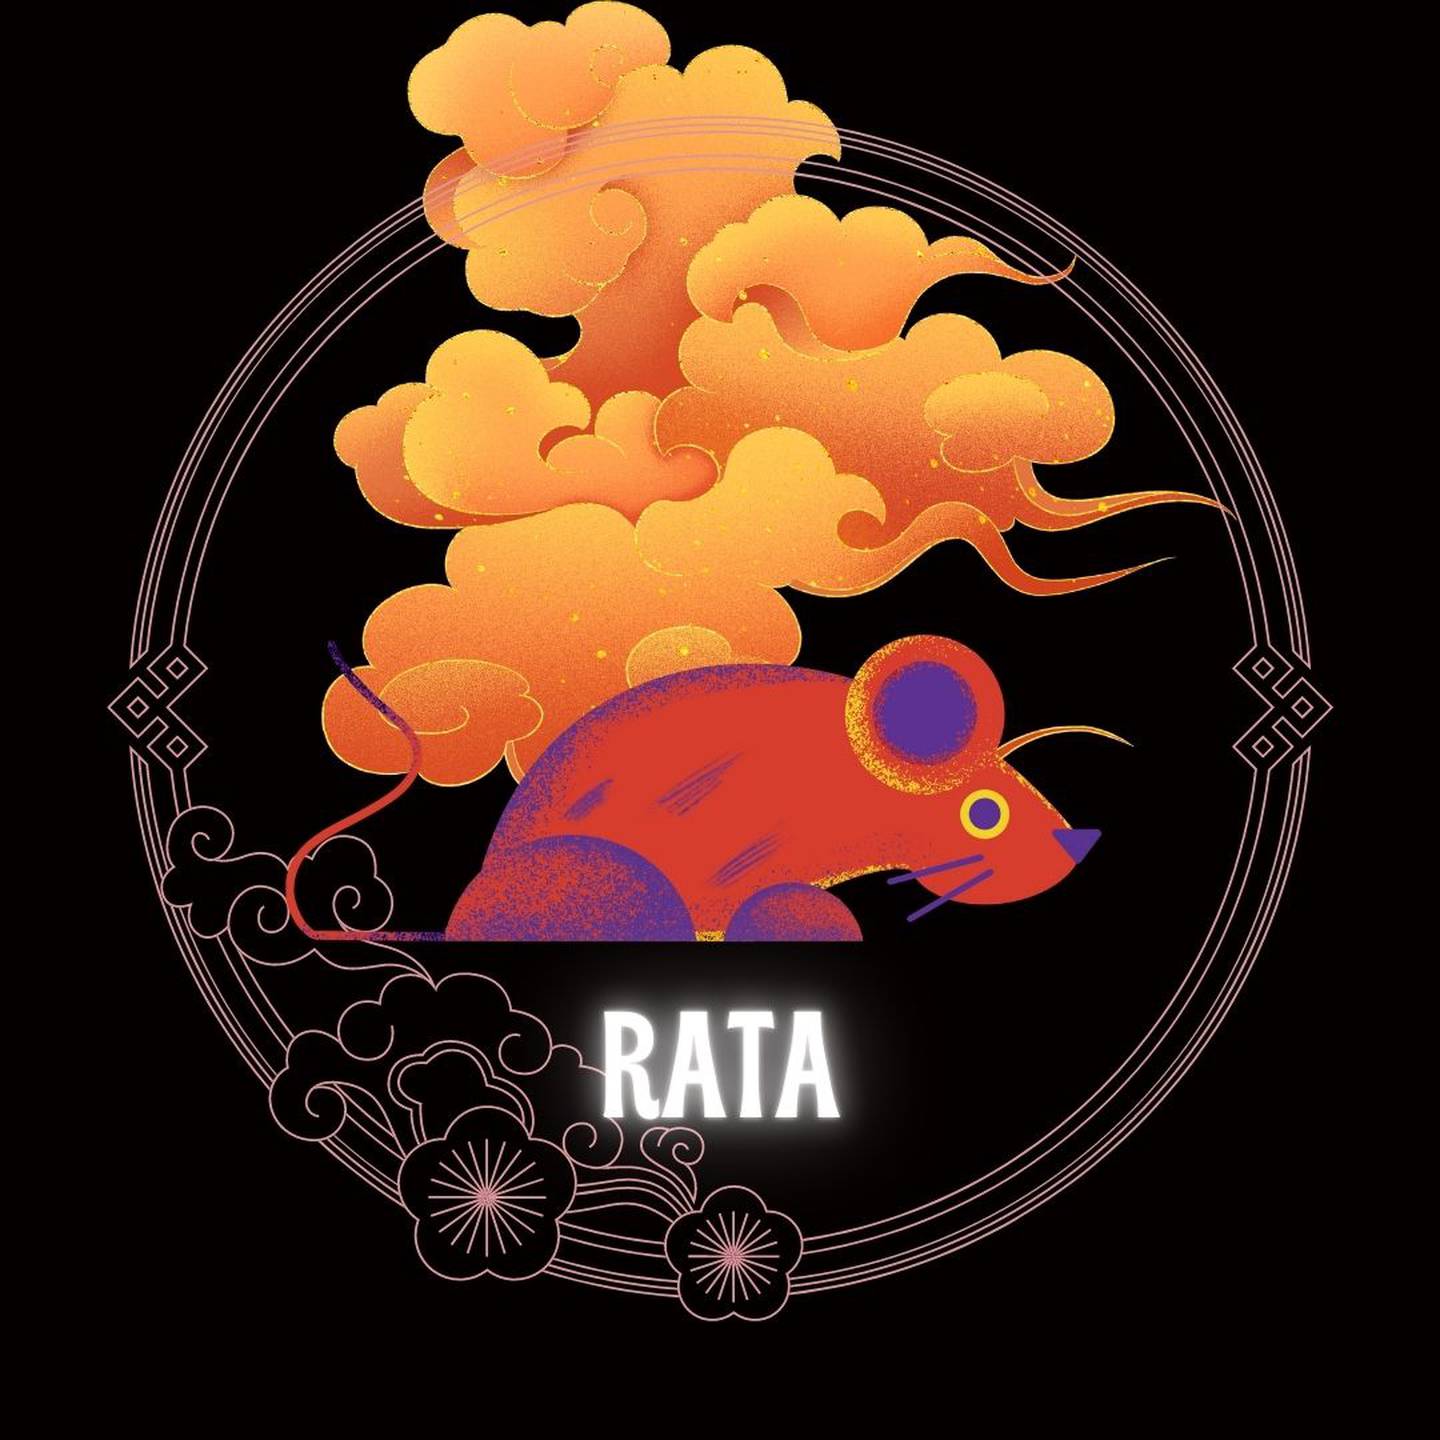 Caricatura de una rata sobre un fondo negro, con motivos decorativos orientales dorados con forma de nube y círculo, que enmarcan el signo. Abajo del dibujo aparece la palabra rata.